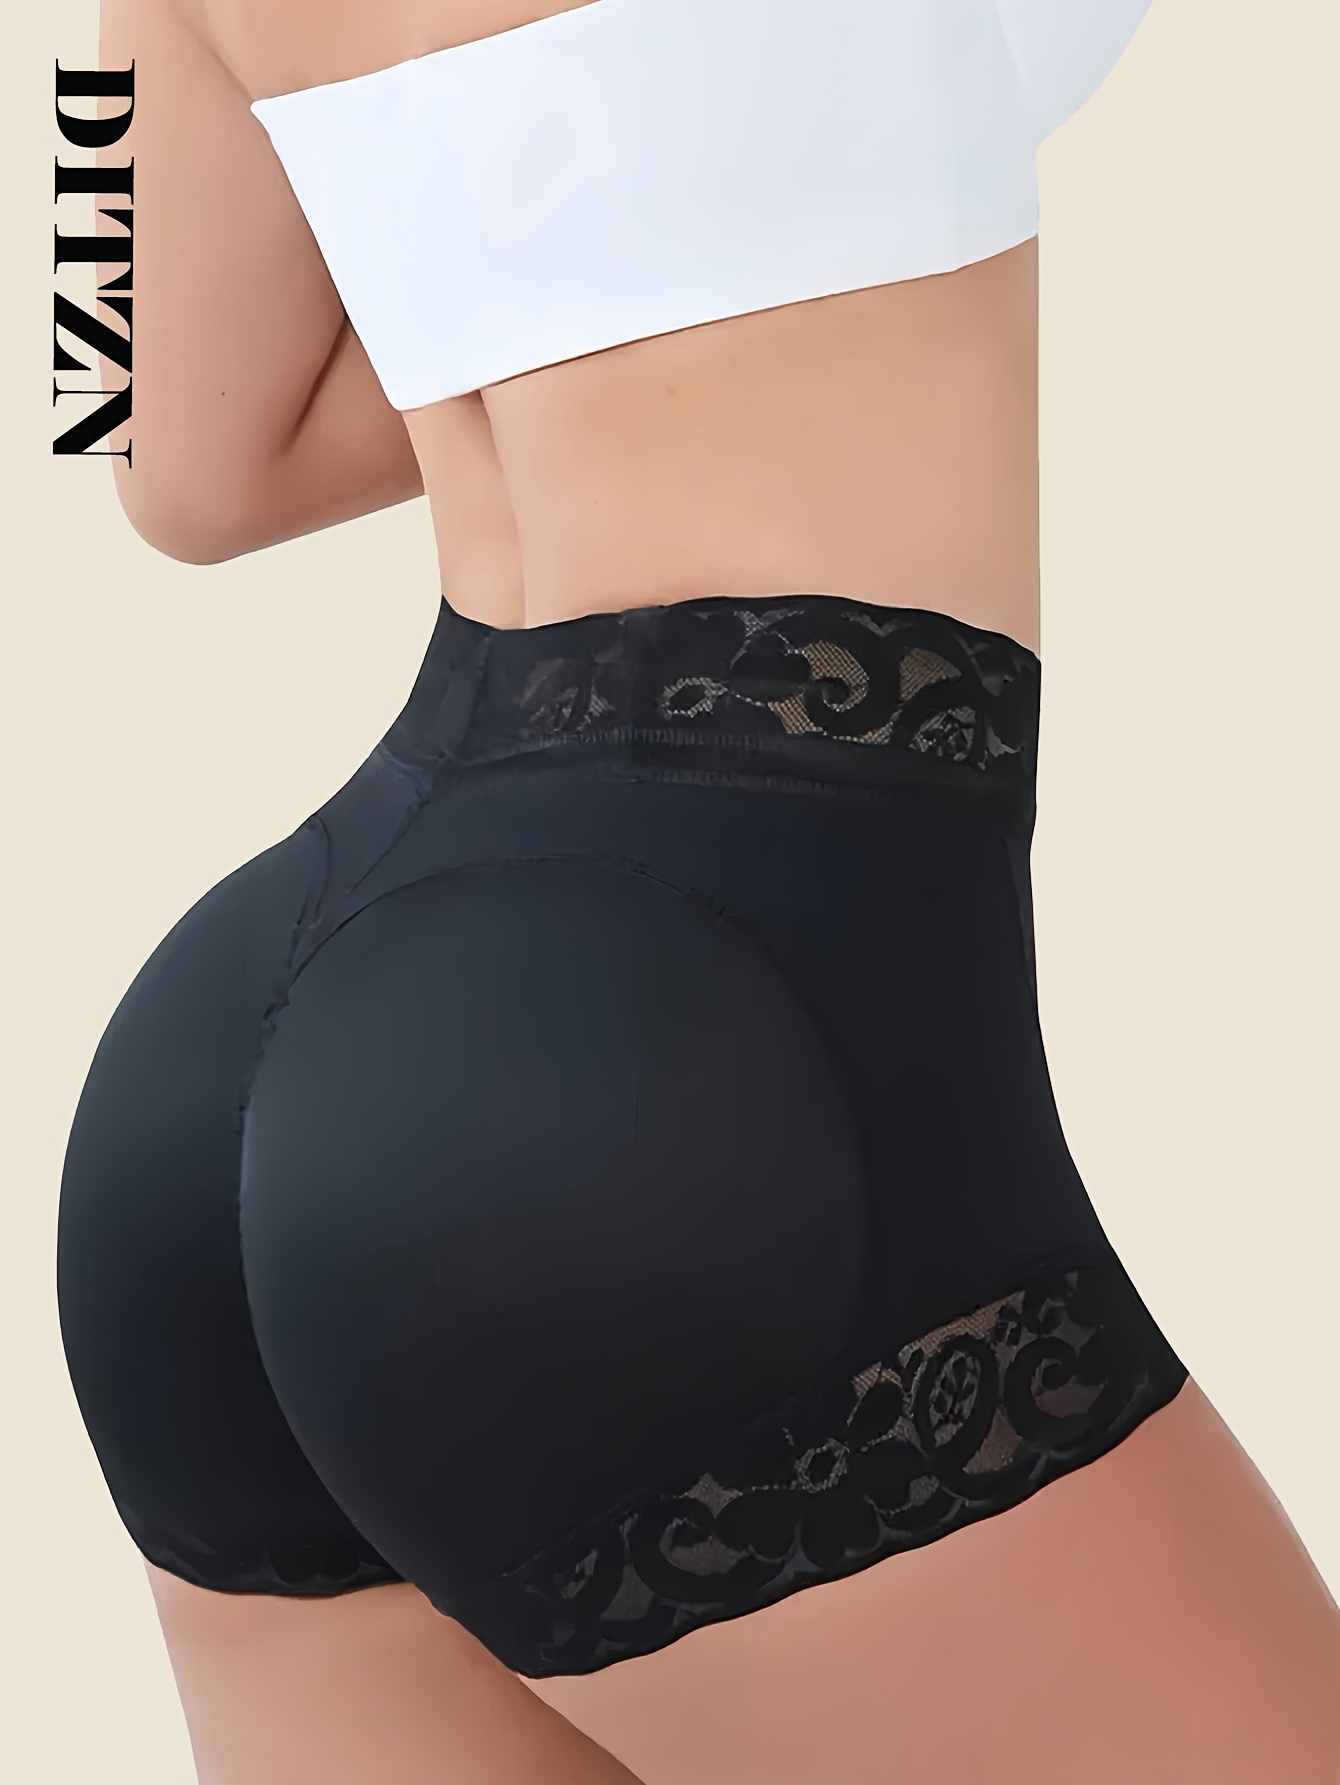 ESSSUT Underwear Womens Womens Butt Lifter Padded Panties Hip Enhancer  Underwear Body Shaper Lingerie For Women Xxl 